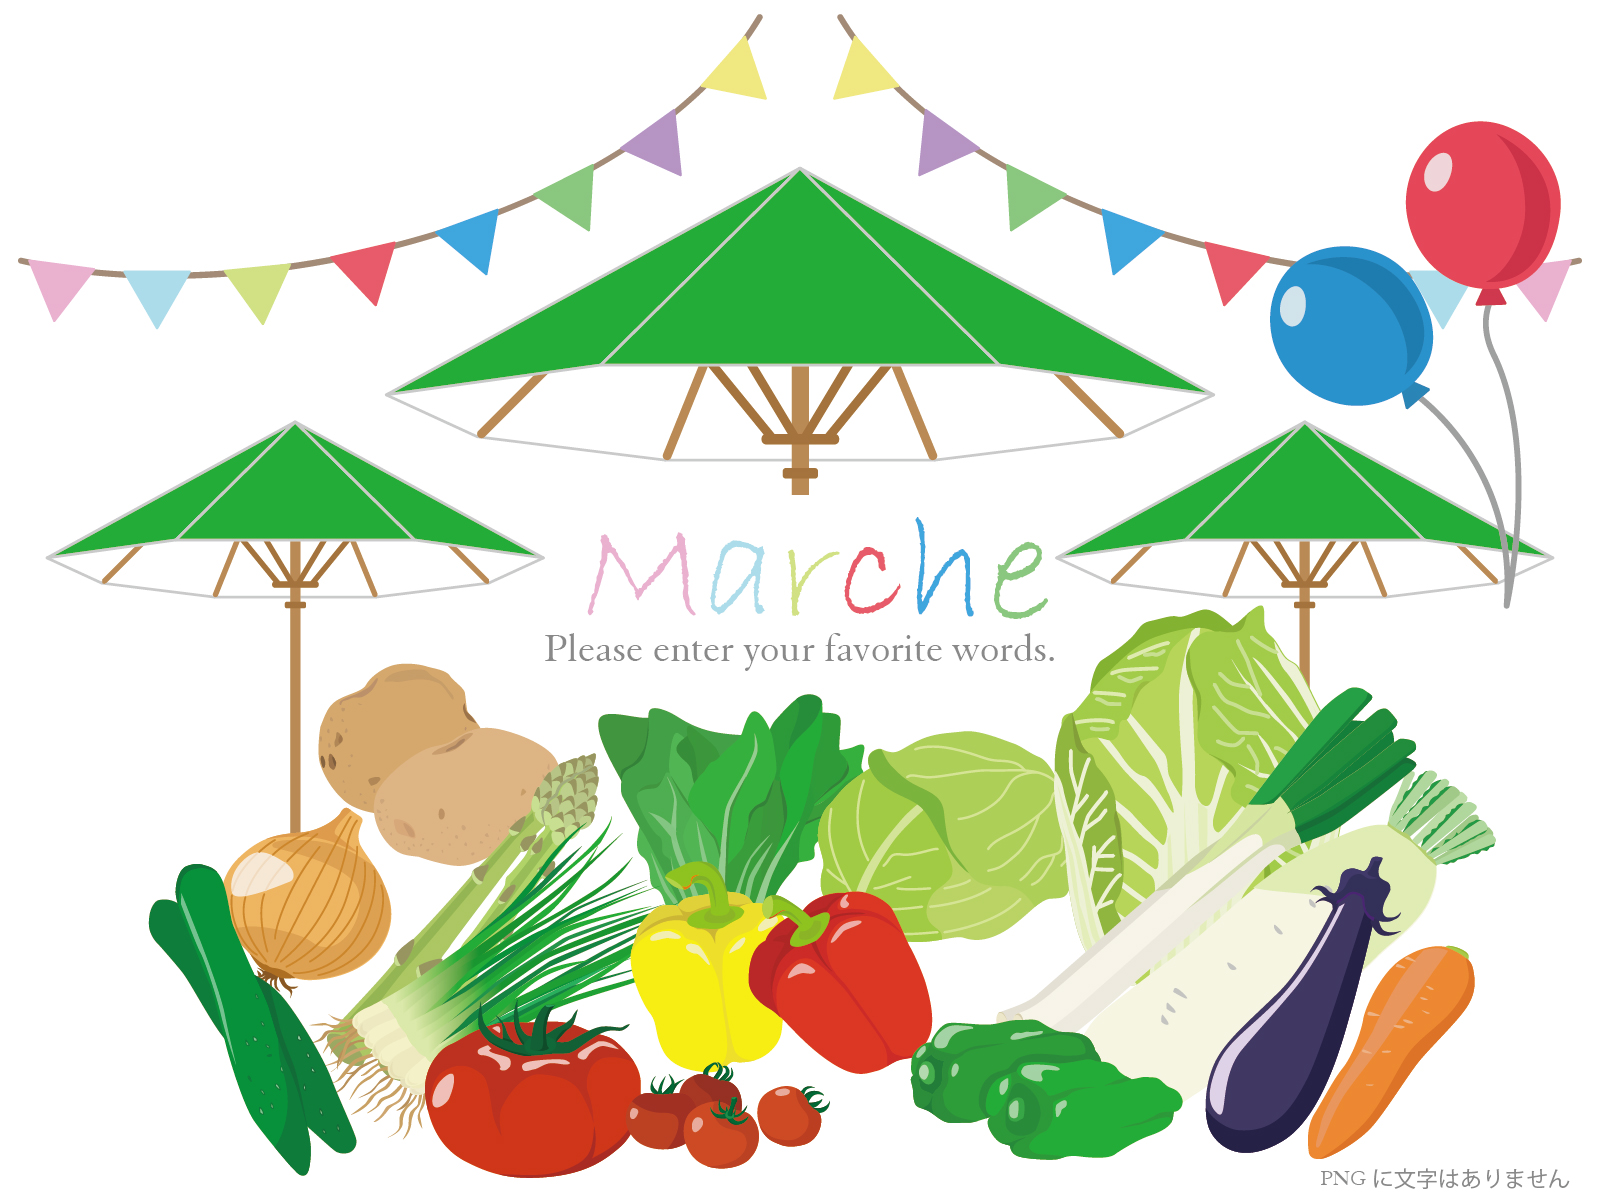 6月7日(金)、滋賀大学でマルシェ開催！ 健康的な野菜や惣菜、手作りお菓子など！